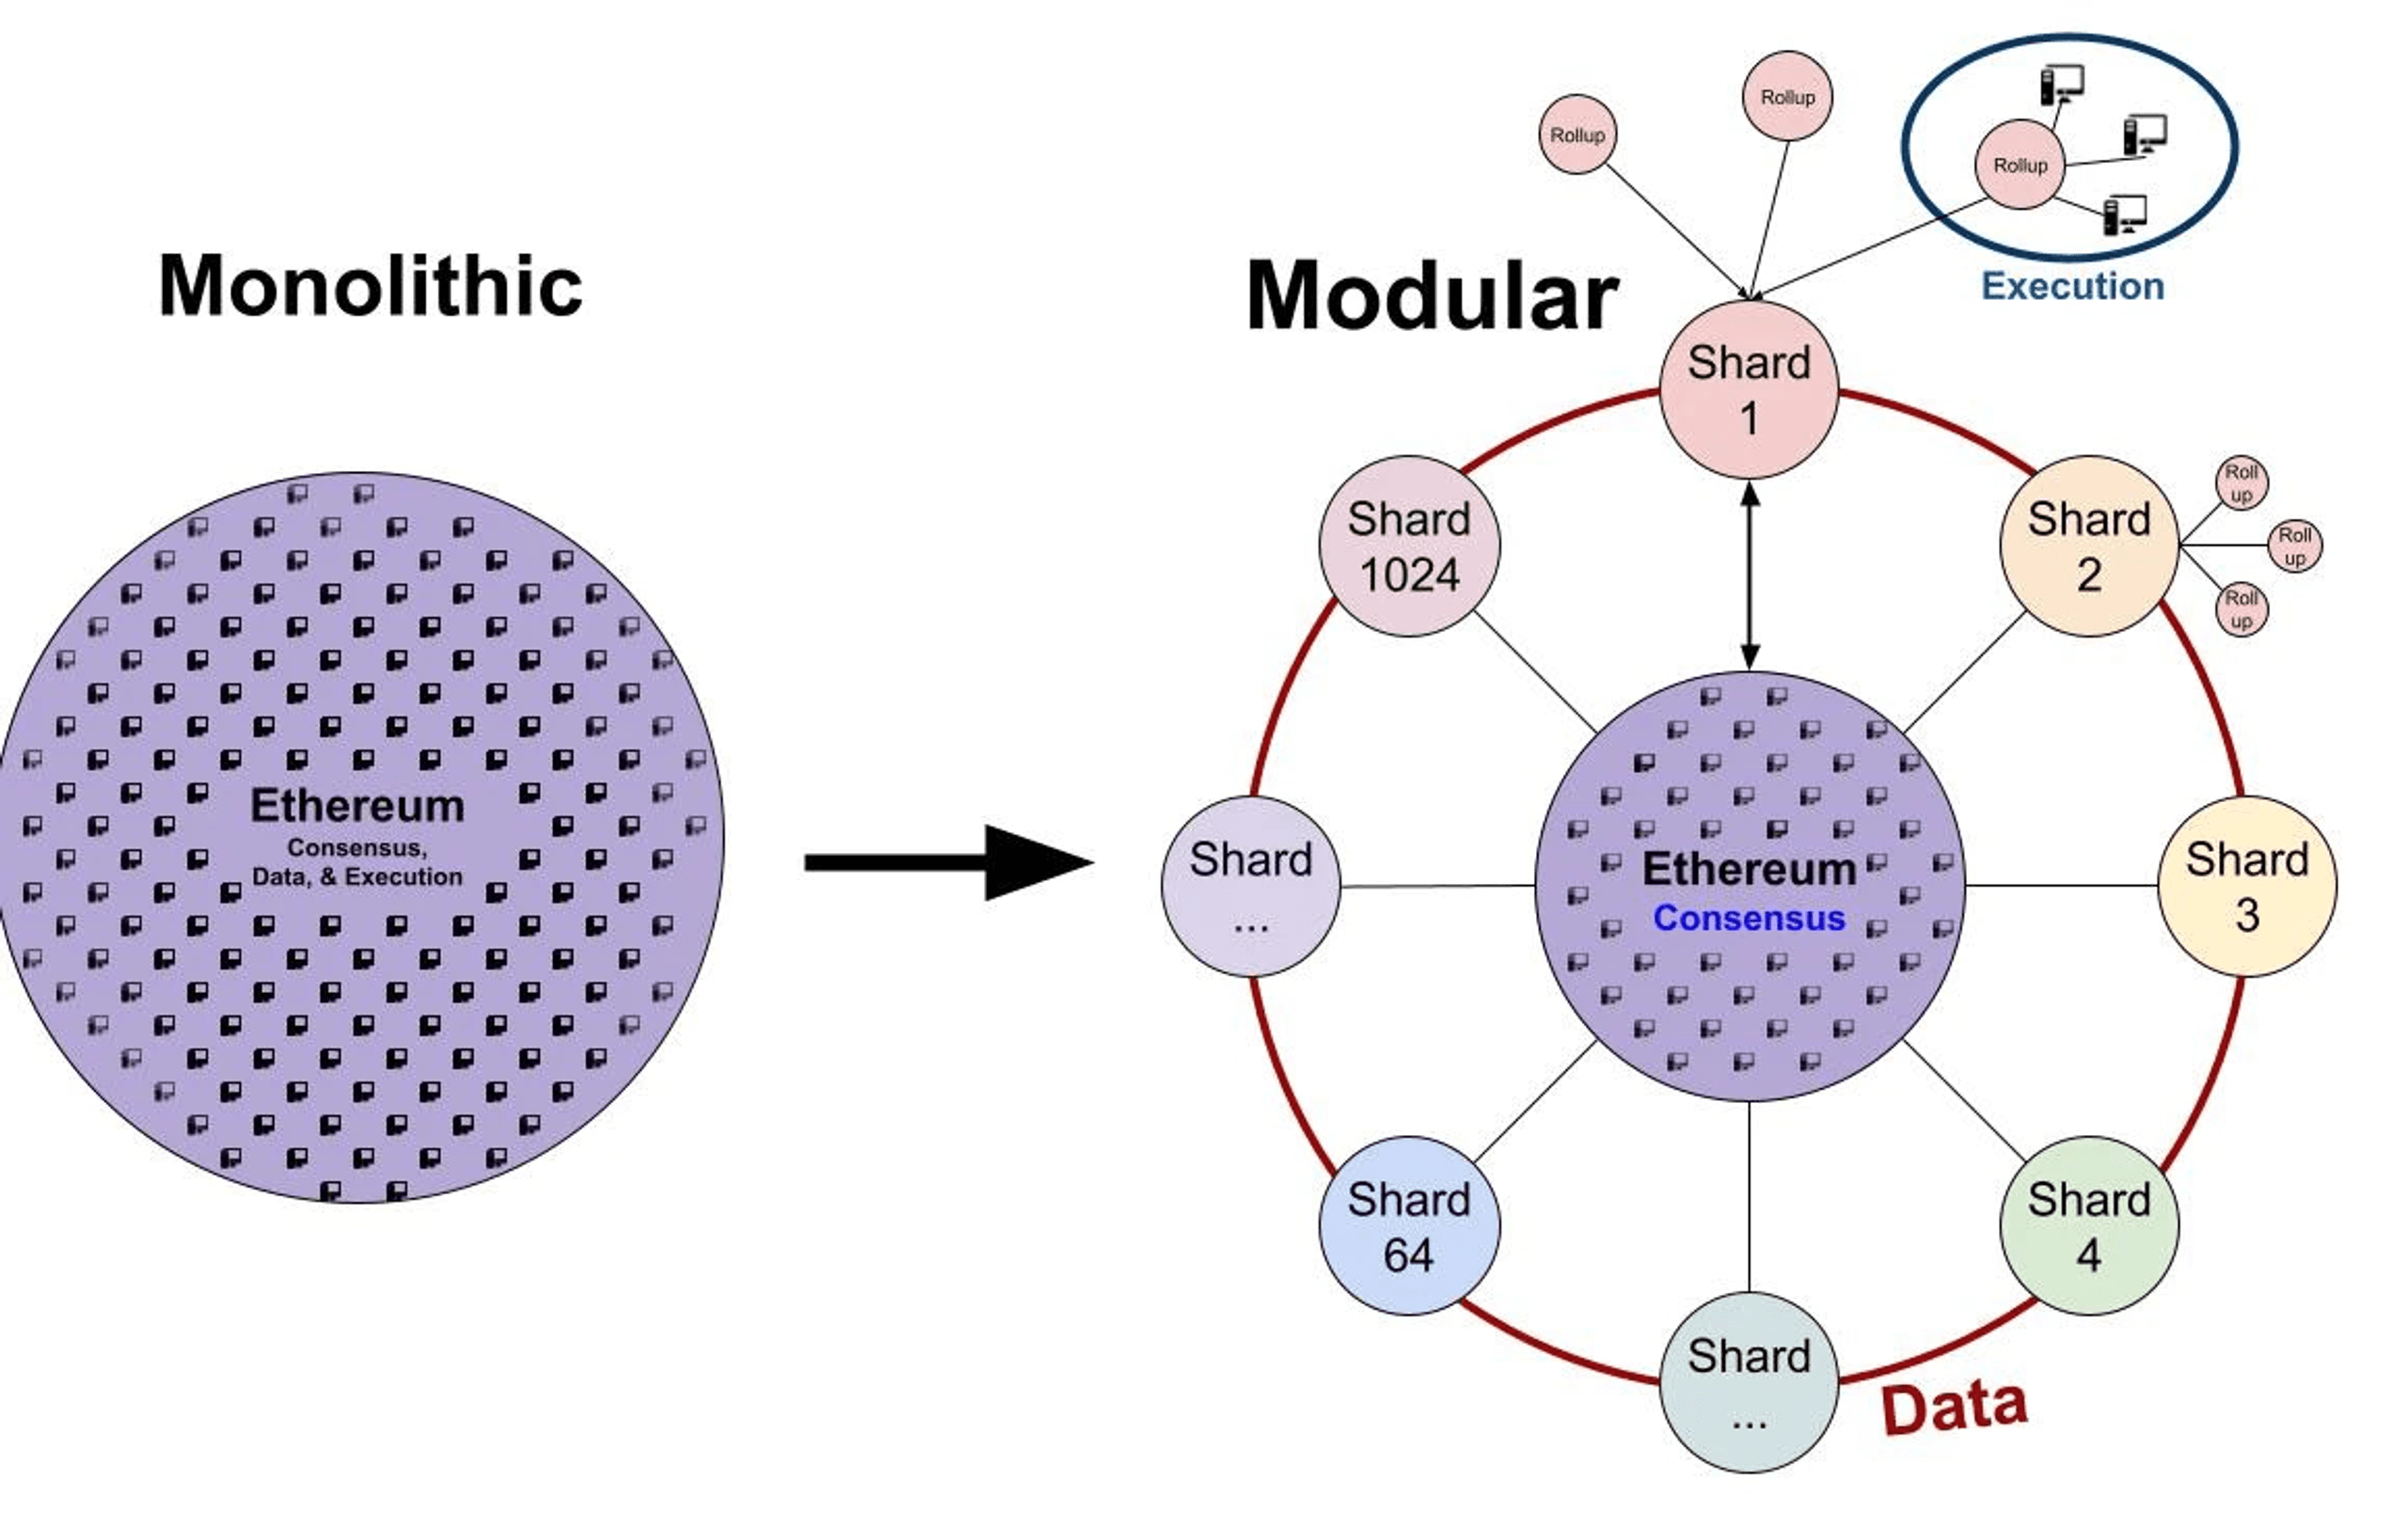 mô hình modular của ethereum